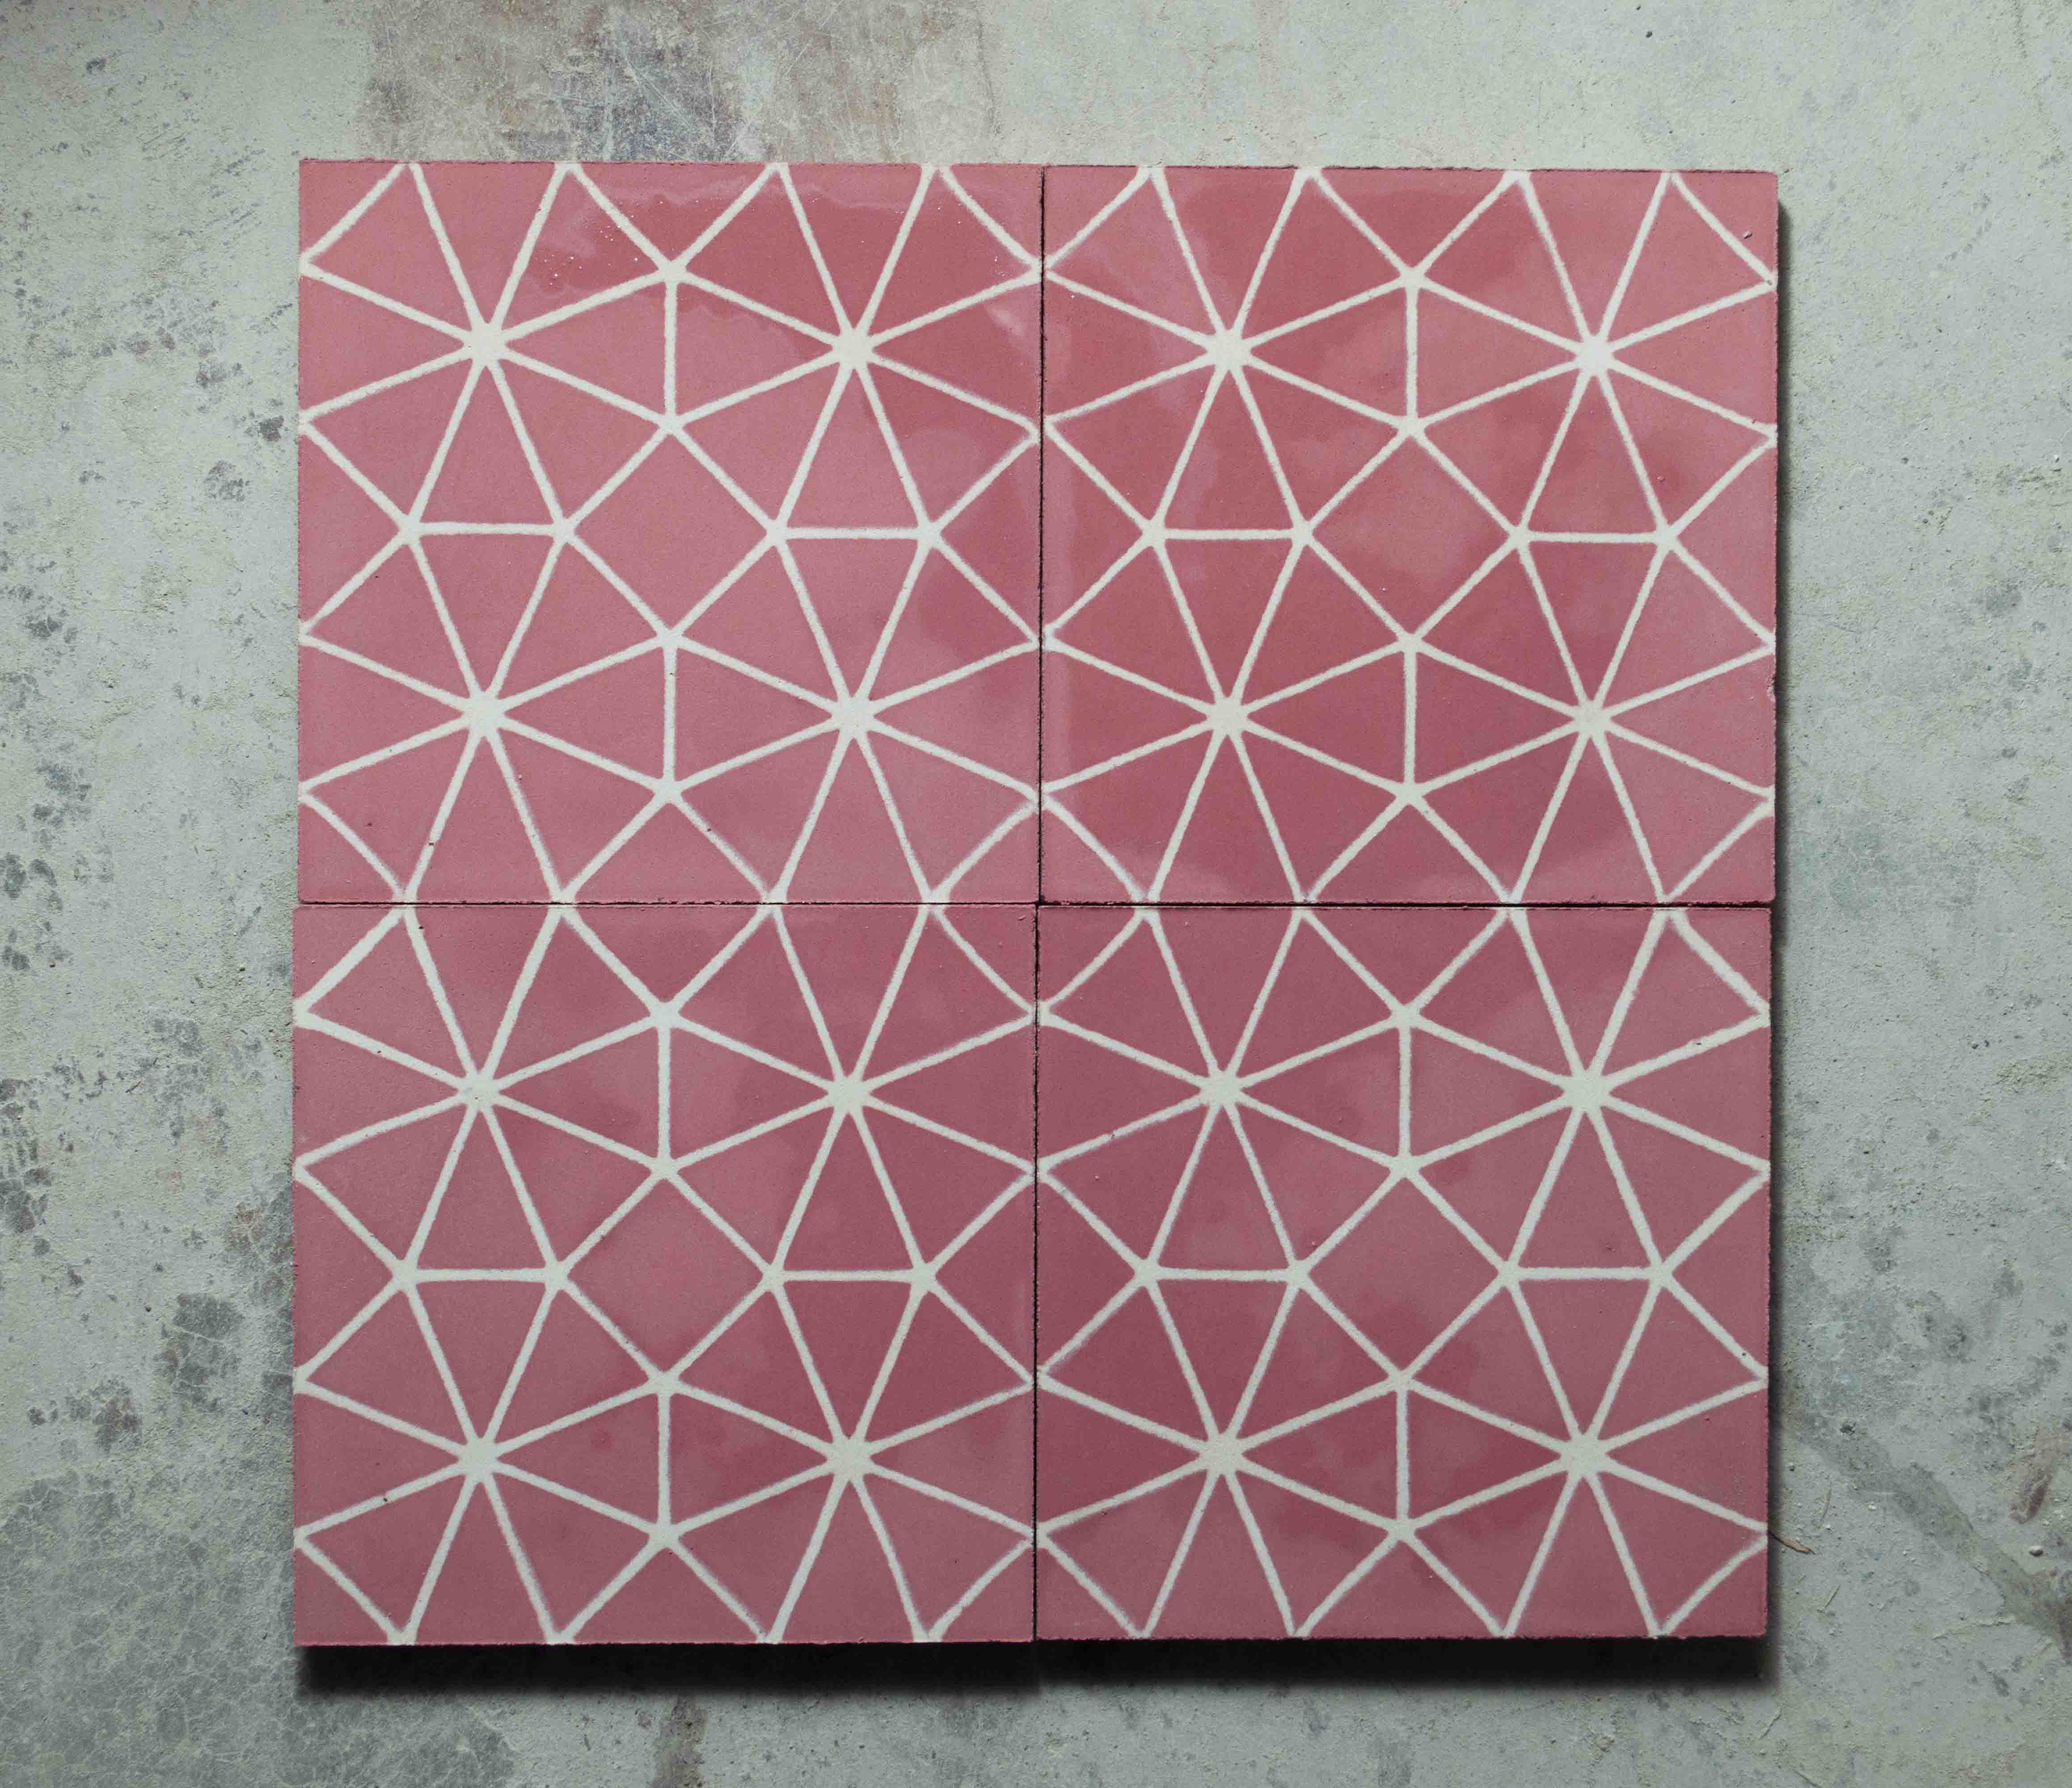 Octagon Encaustic Tile 